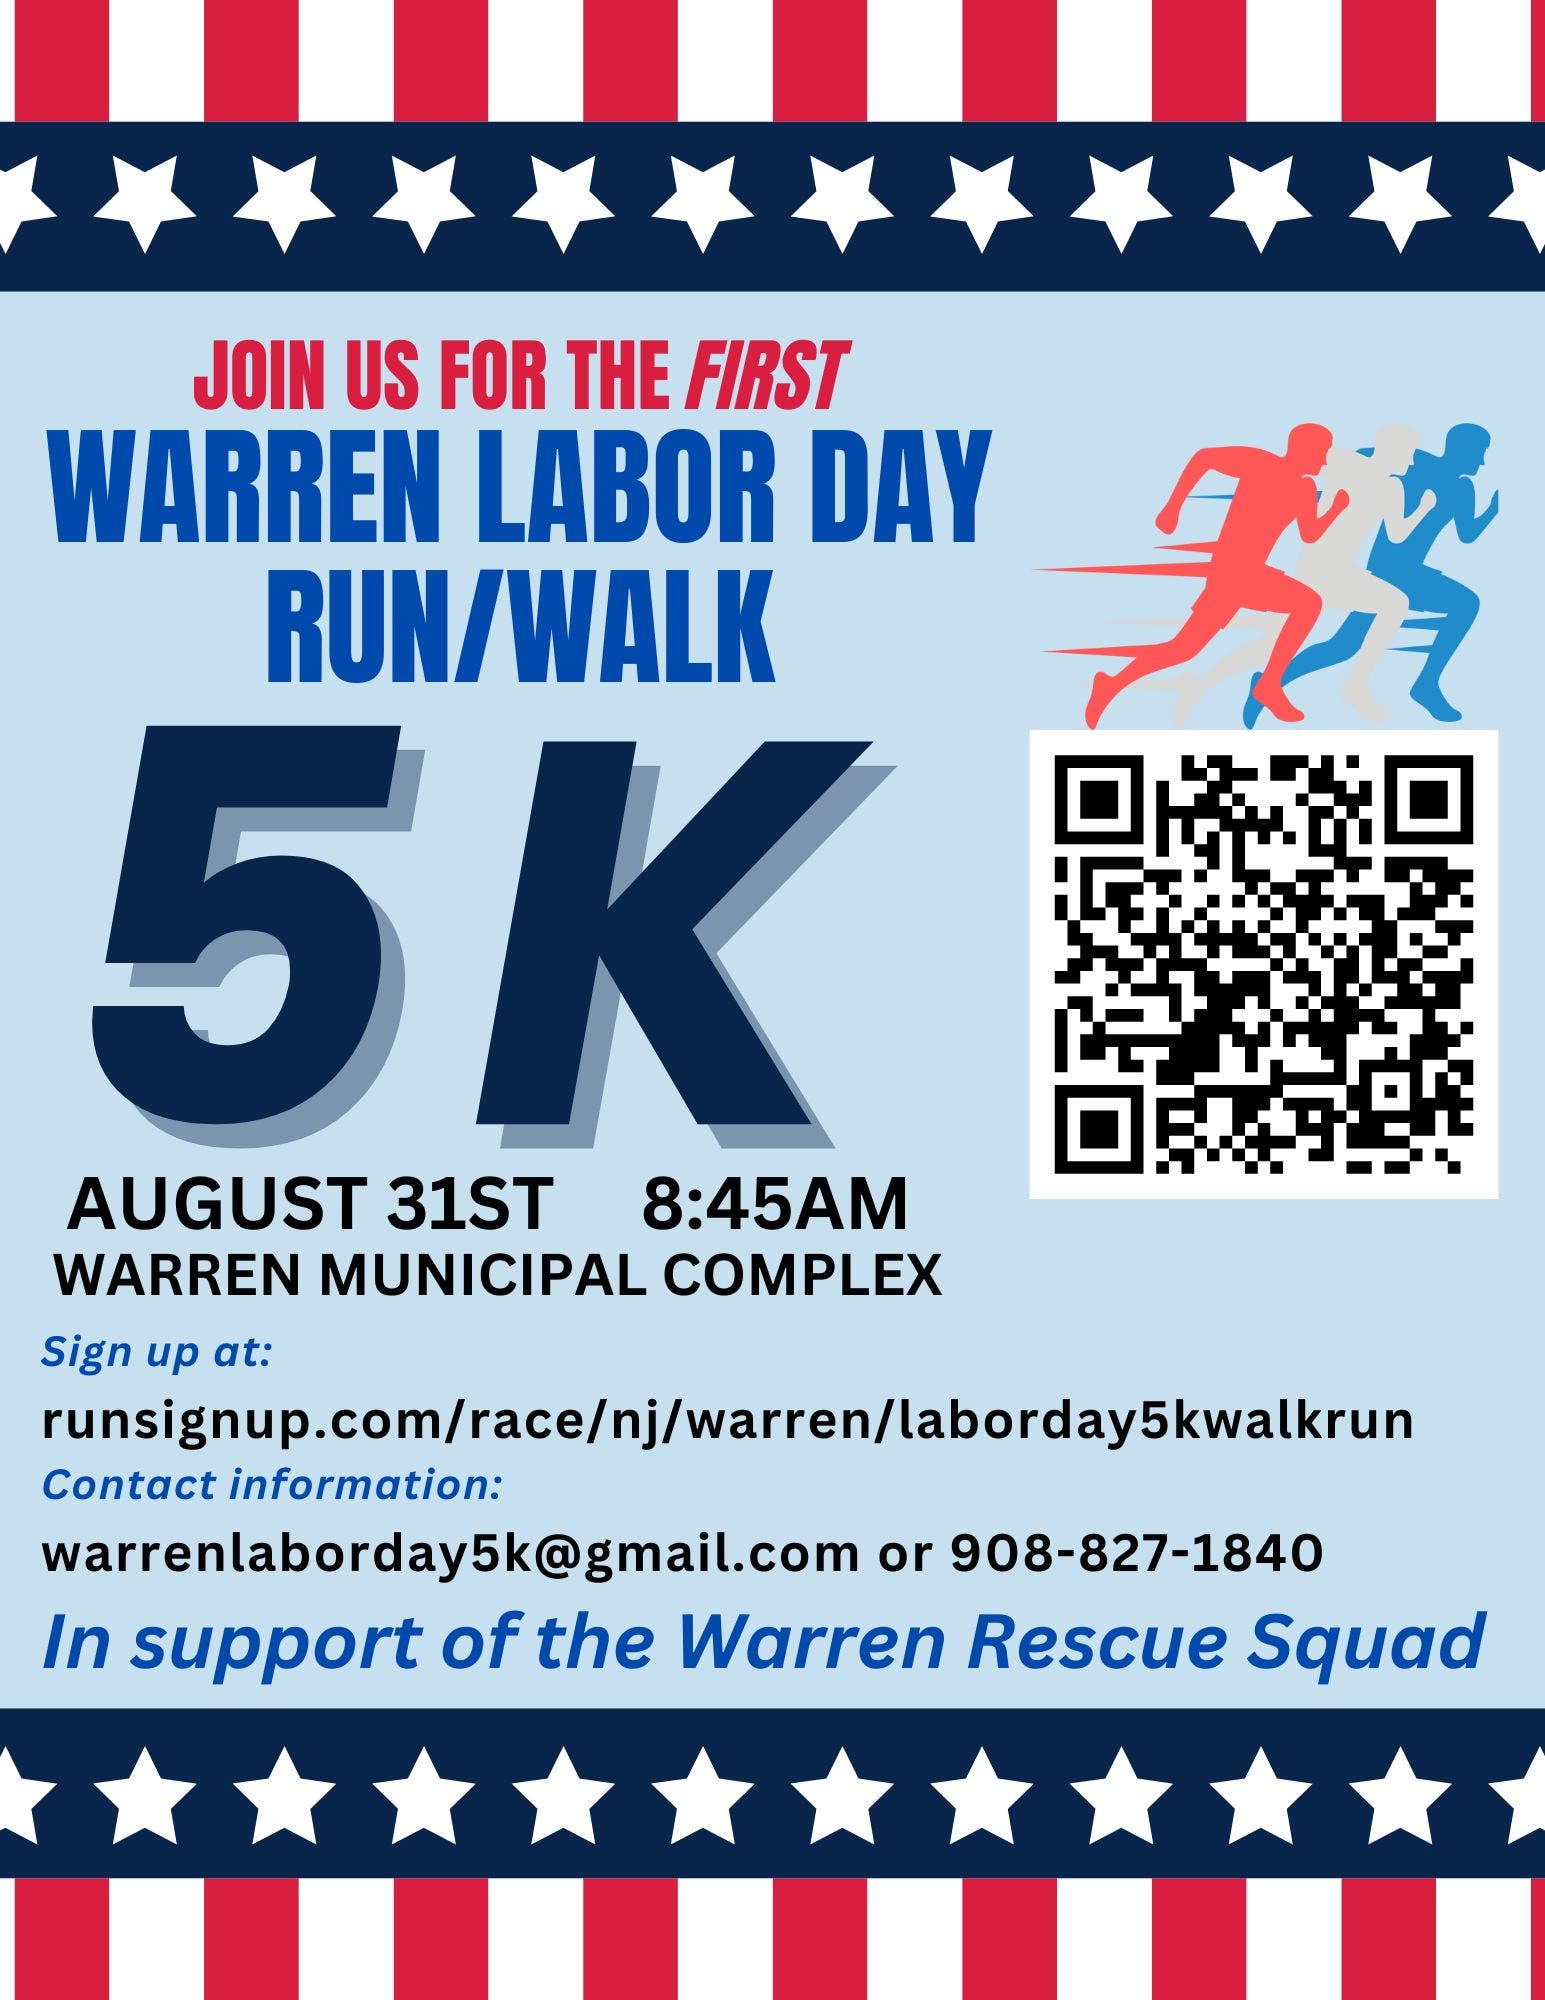 Warren Labor Day 5k Run/Walk